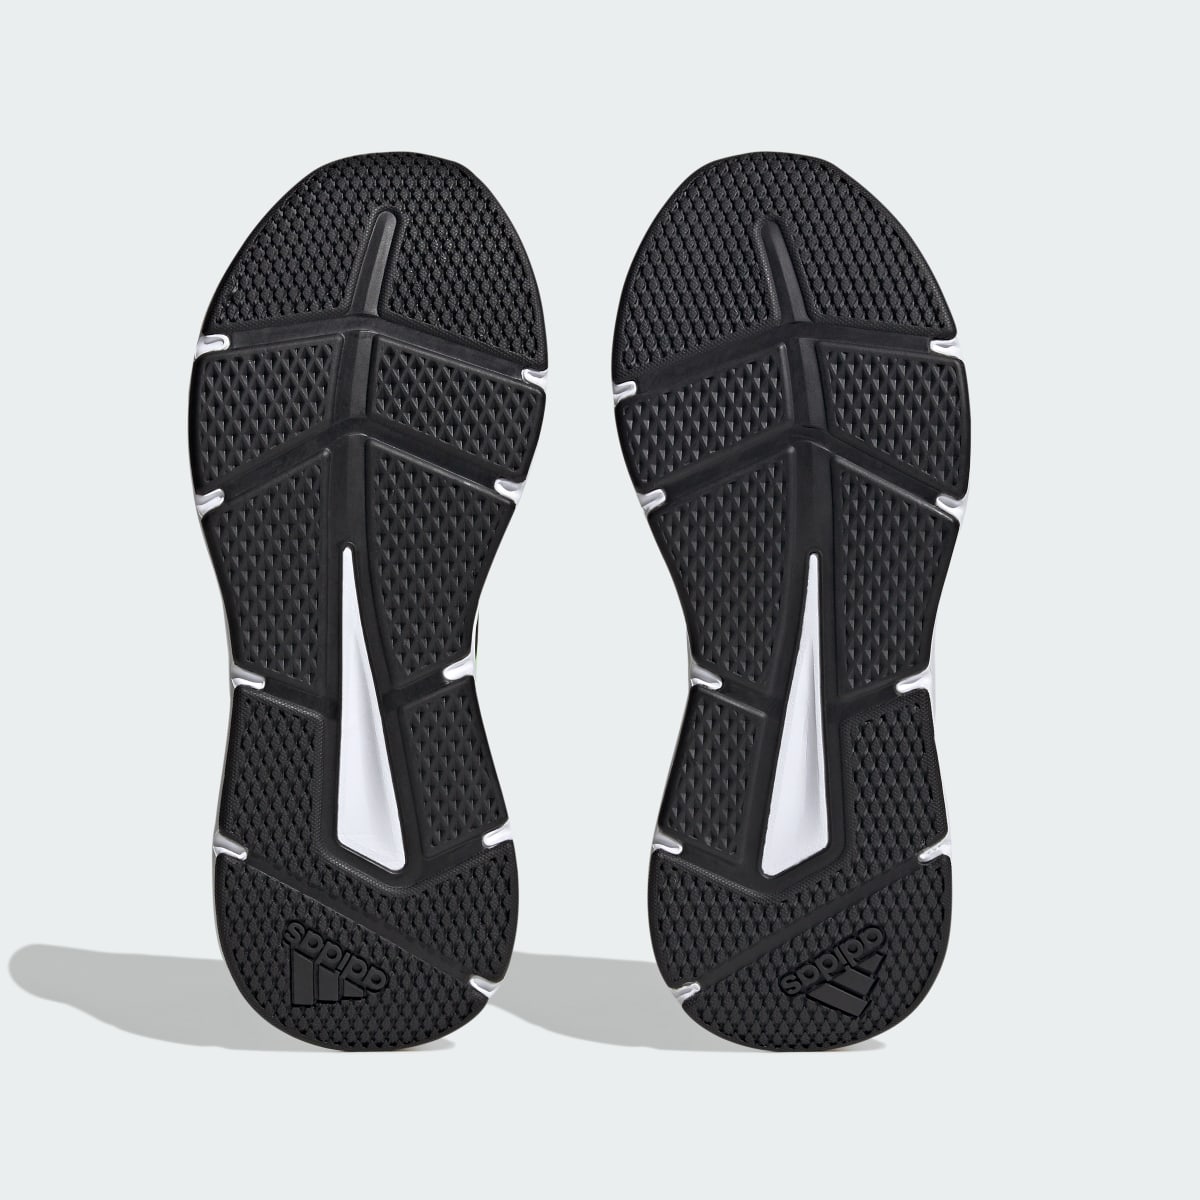 Adidas Galaxy 6 Ayakkabı. 4